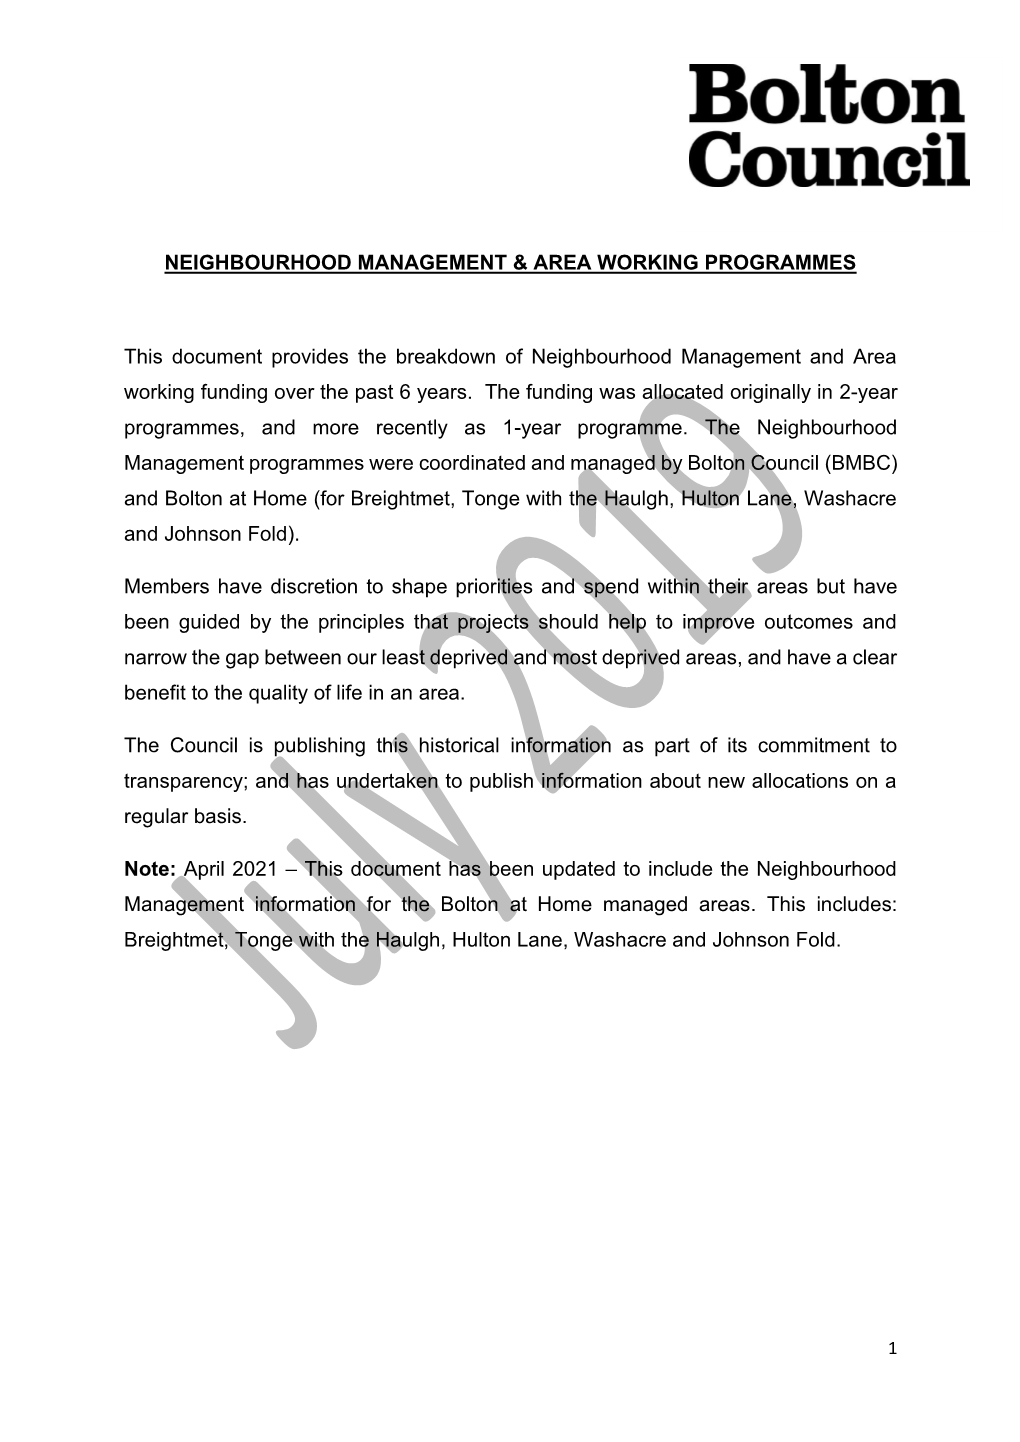 Neighbourhood Management & Area Working Programme